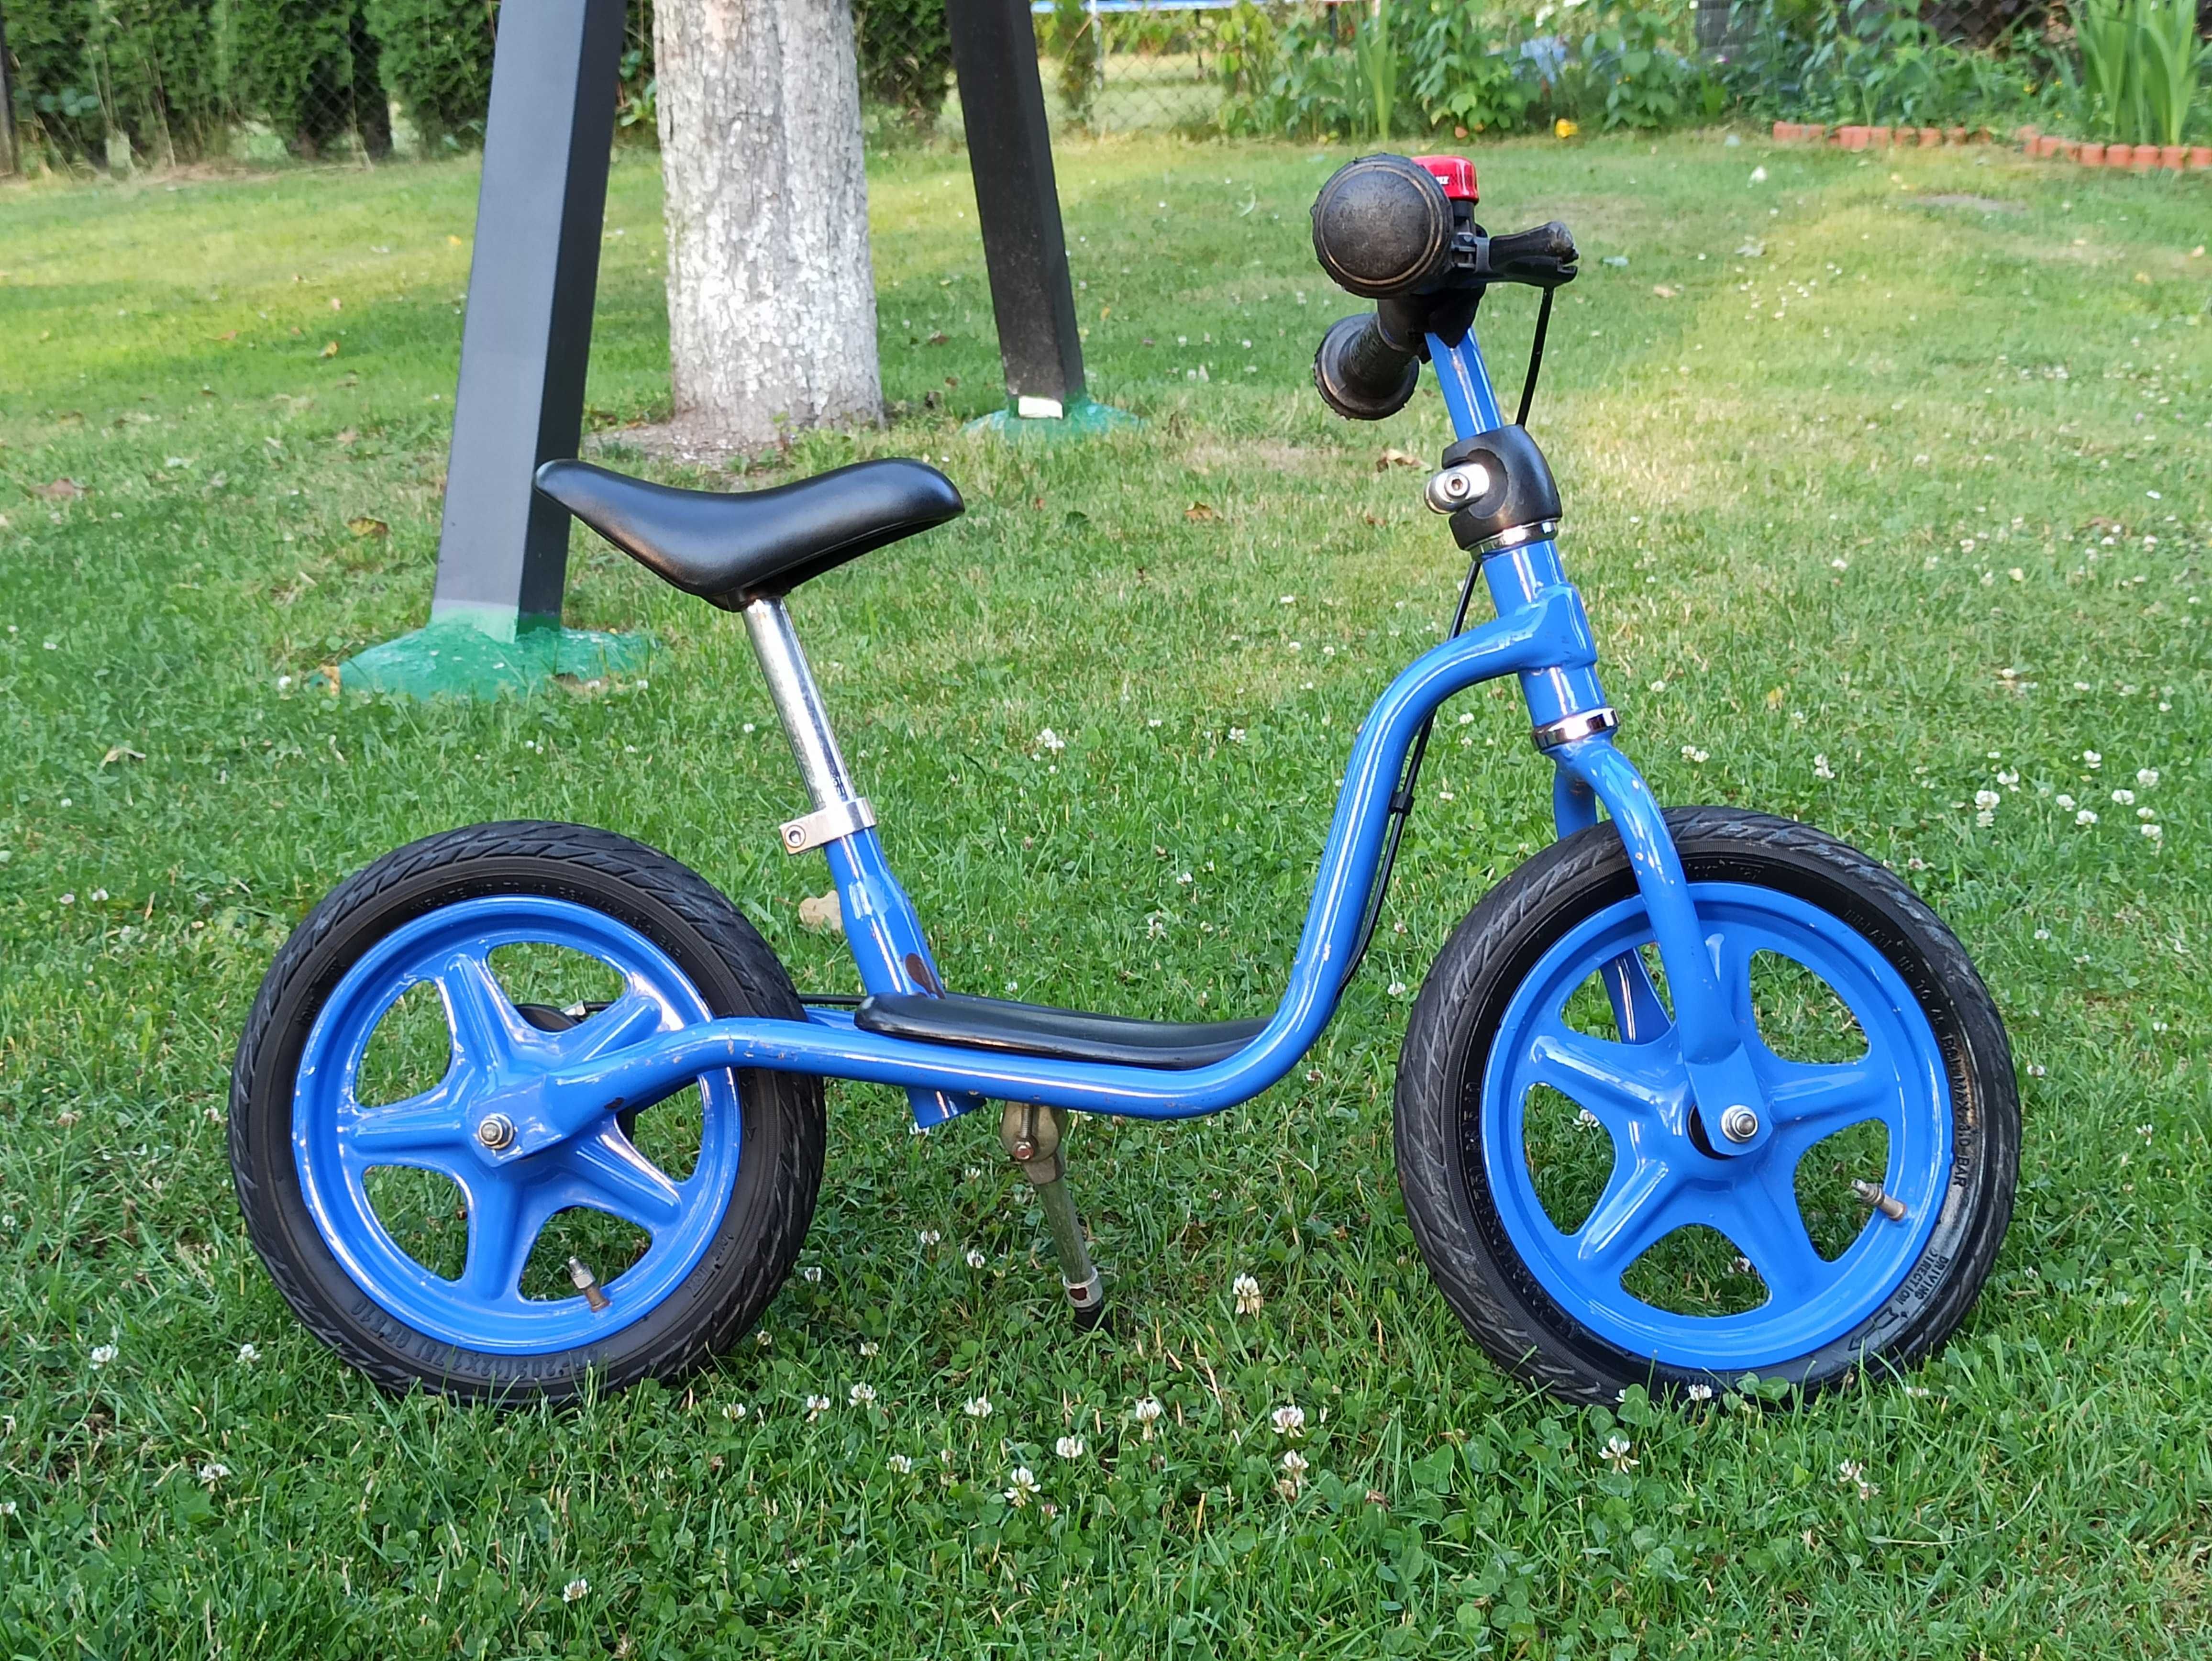 Rower Puky LR 1 Br niebieski rowerek biegowy